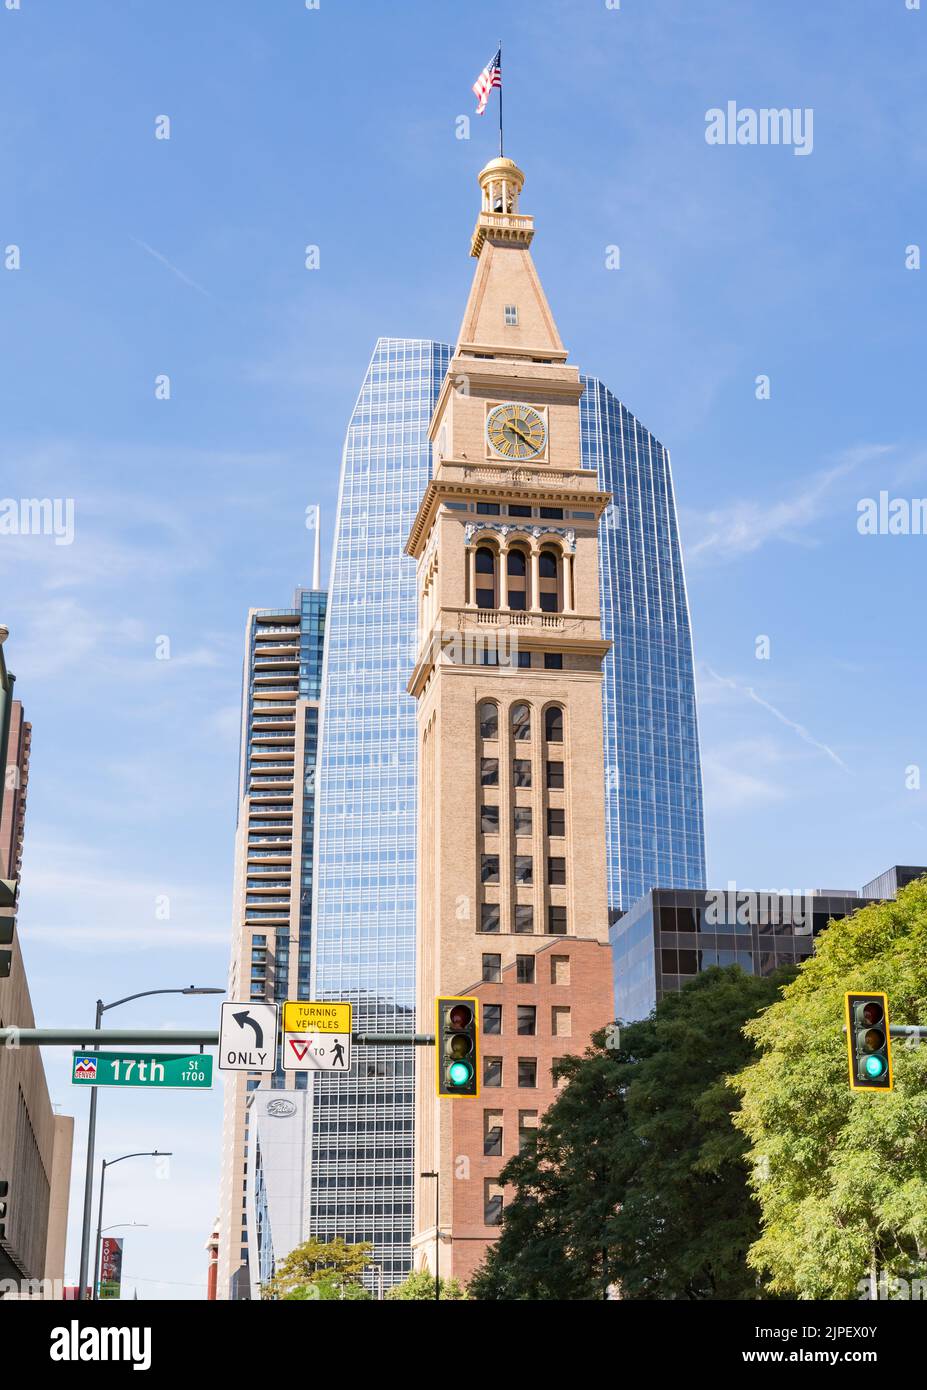 La storica torre dell'orologio Daniels & Fisher lungo la 16th Street Mall nel centro di Denver, Colorado Foto Stock